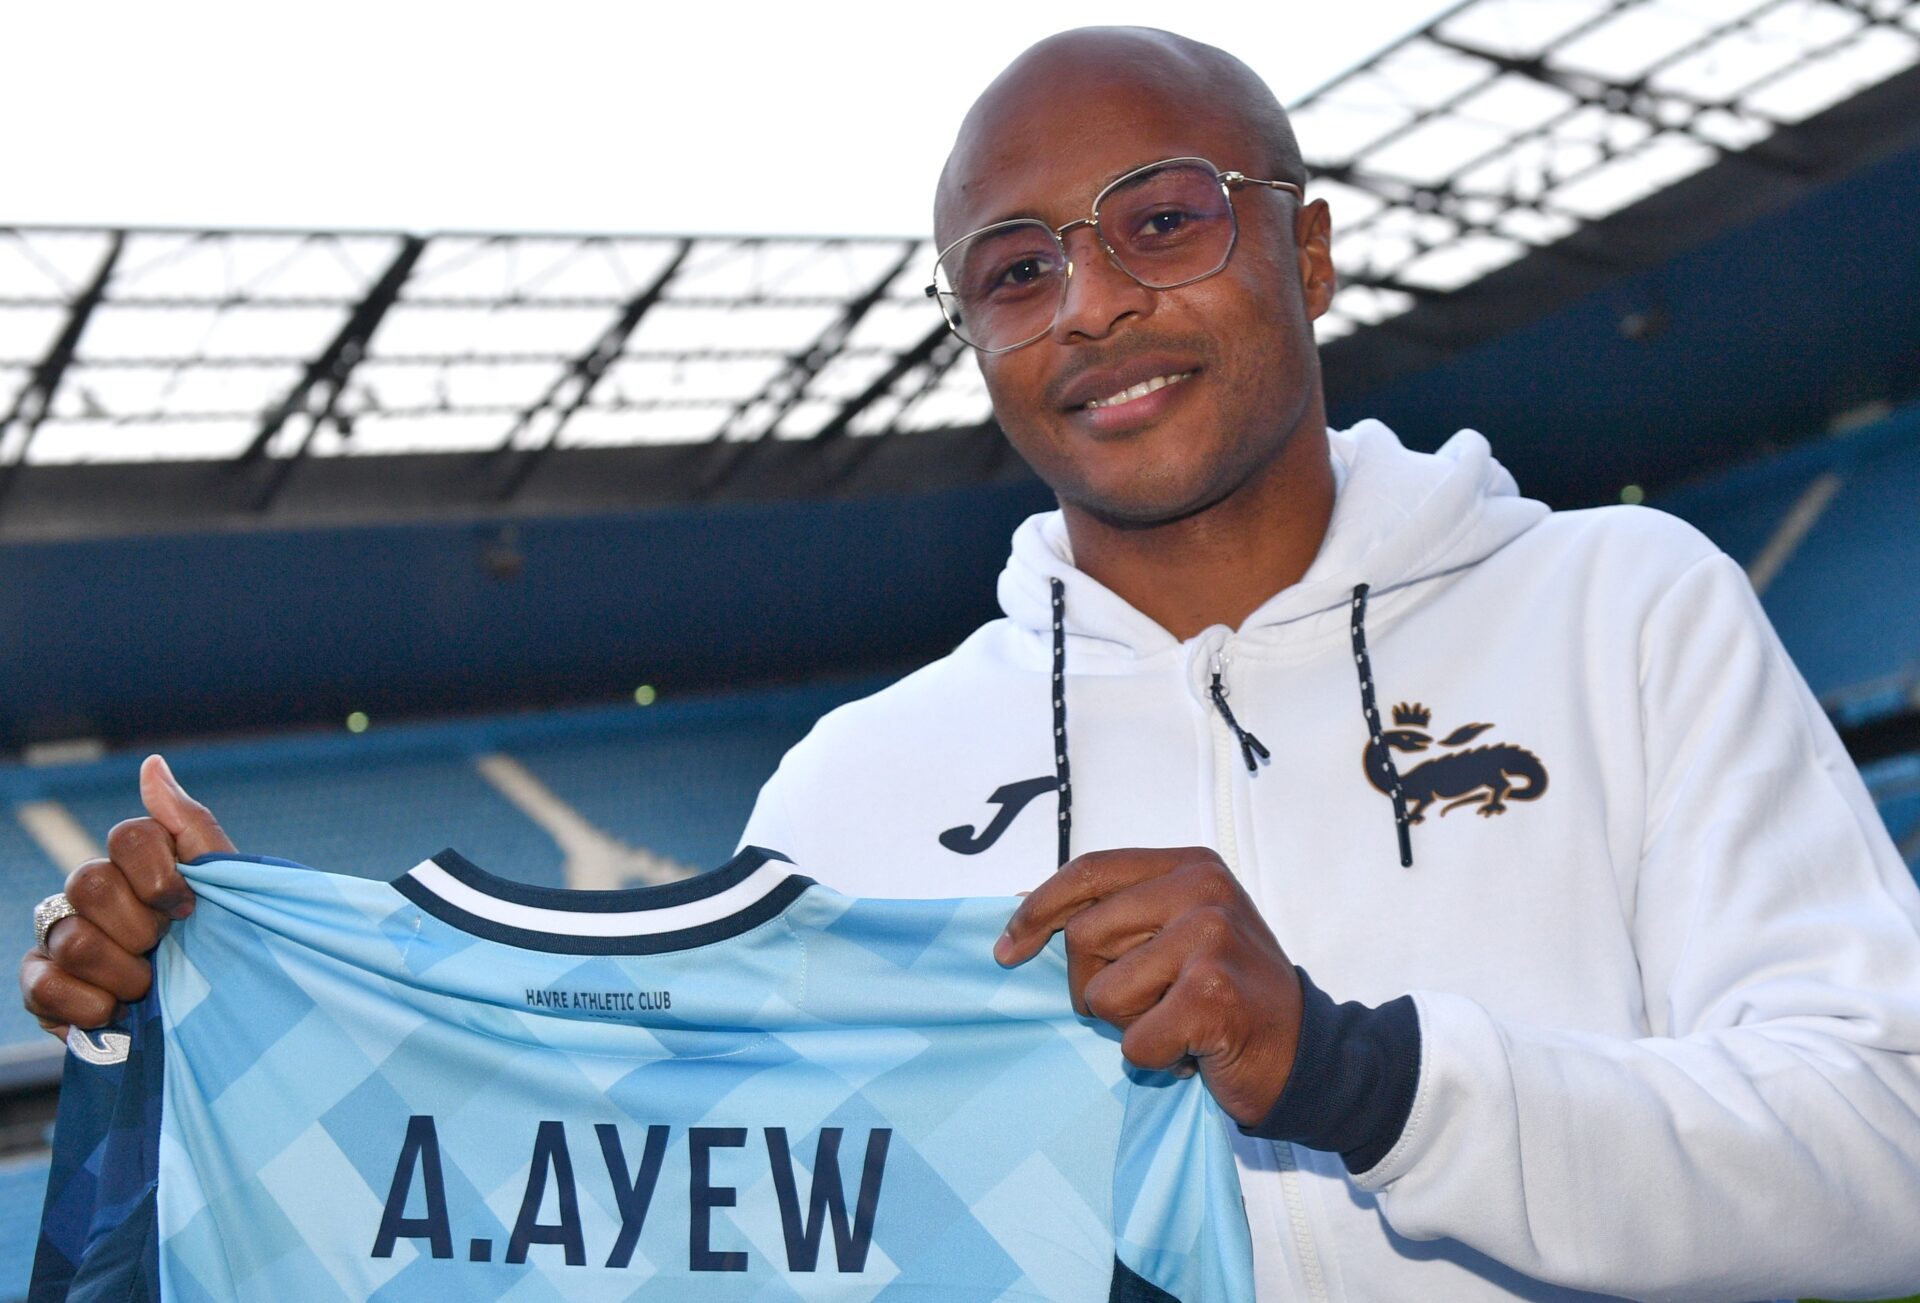 Diário de Transferências - André Ayew vai reforçar o Le Havre, de